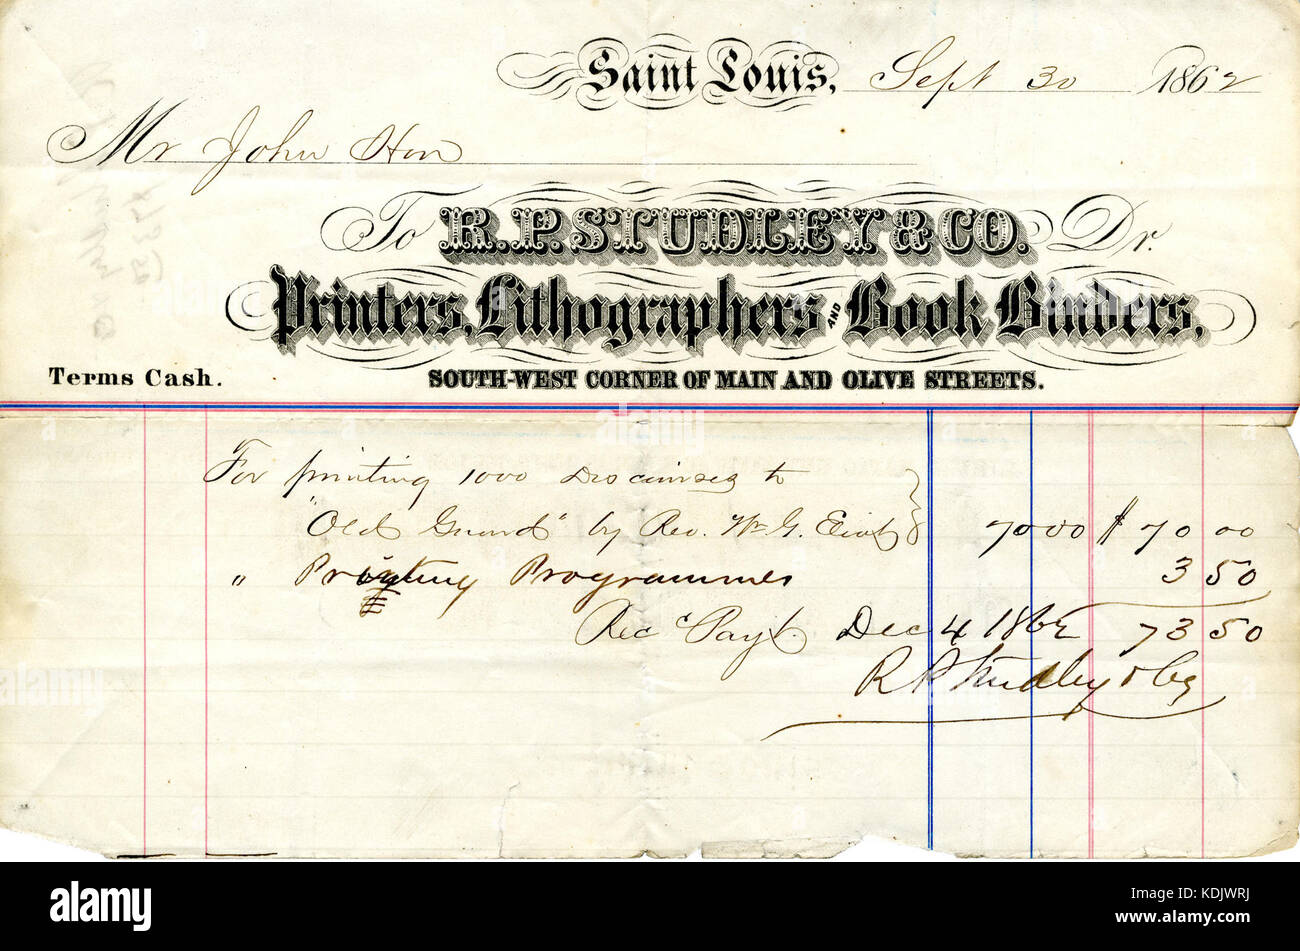 Ricevuta di pagamento di $73.50 ricevuto da R.P. Studley dal sig. Giovanni Aton, 30 Settembre 1862 Foto Stock